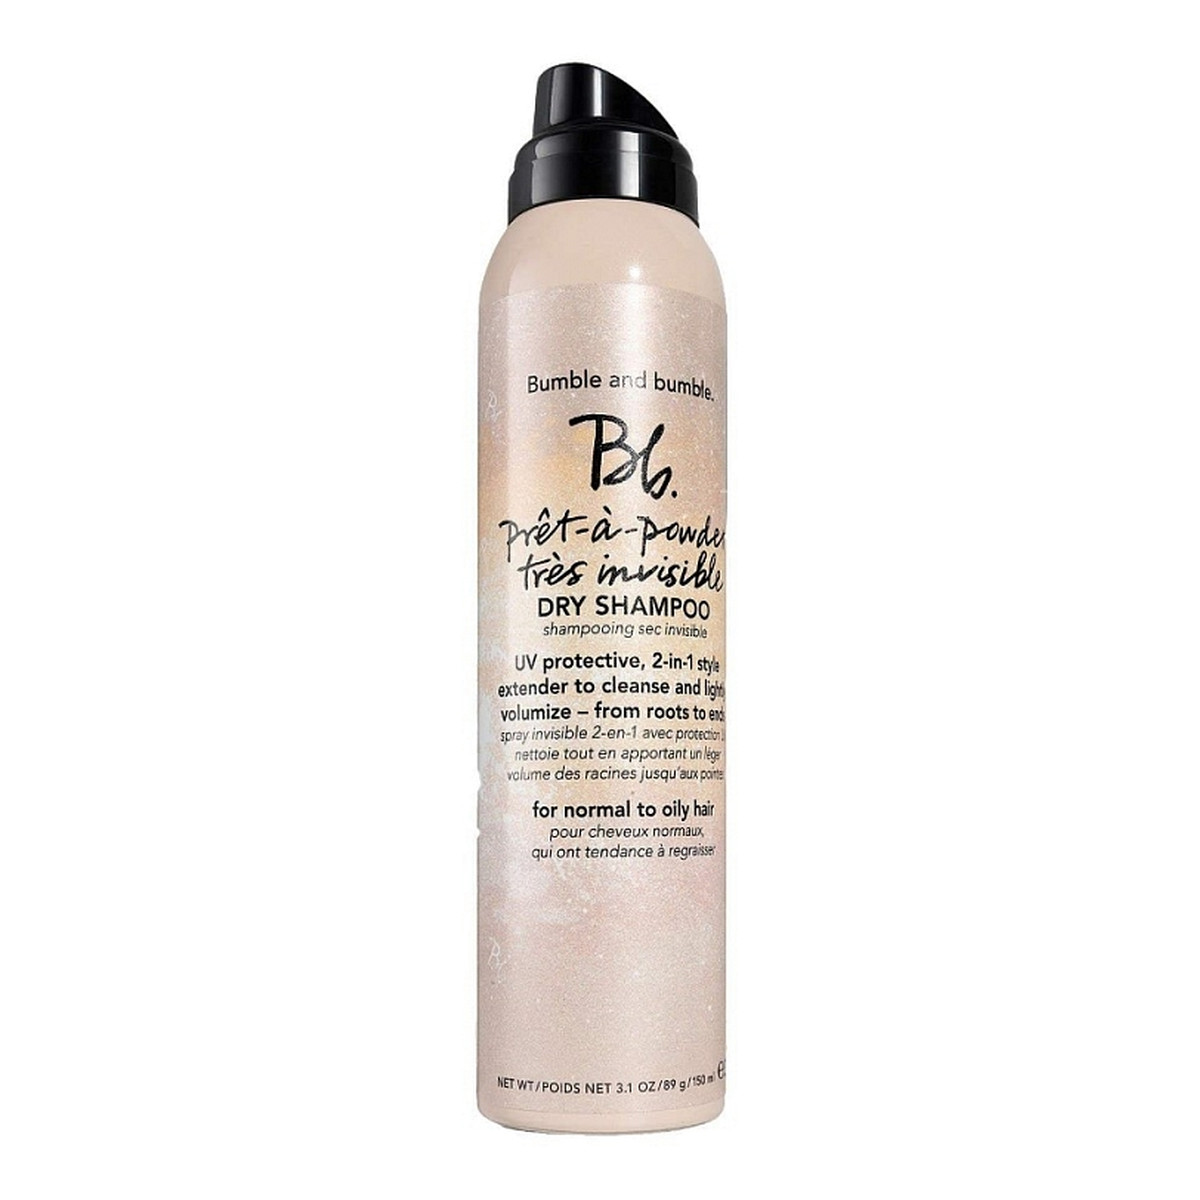 Bumble and bumble Pret-a-Powder Tres Invisible niewidoczny suchy szampon do włosów cienkich 150ml